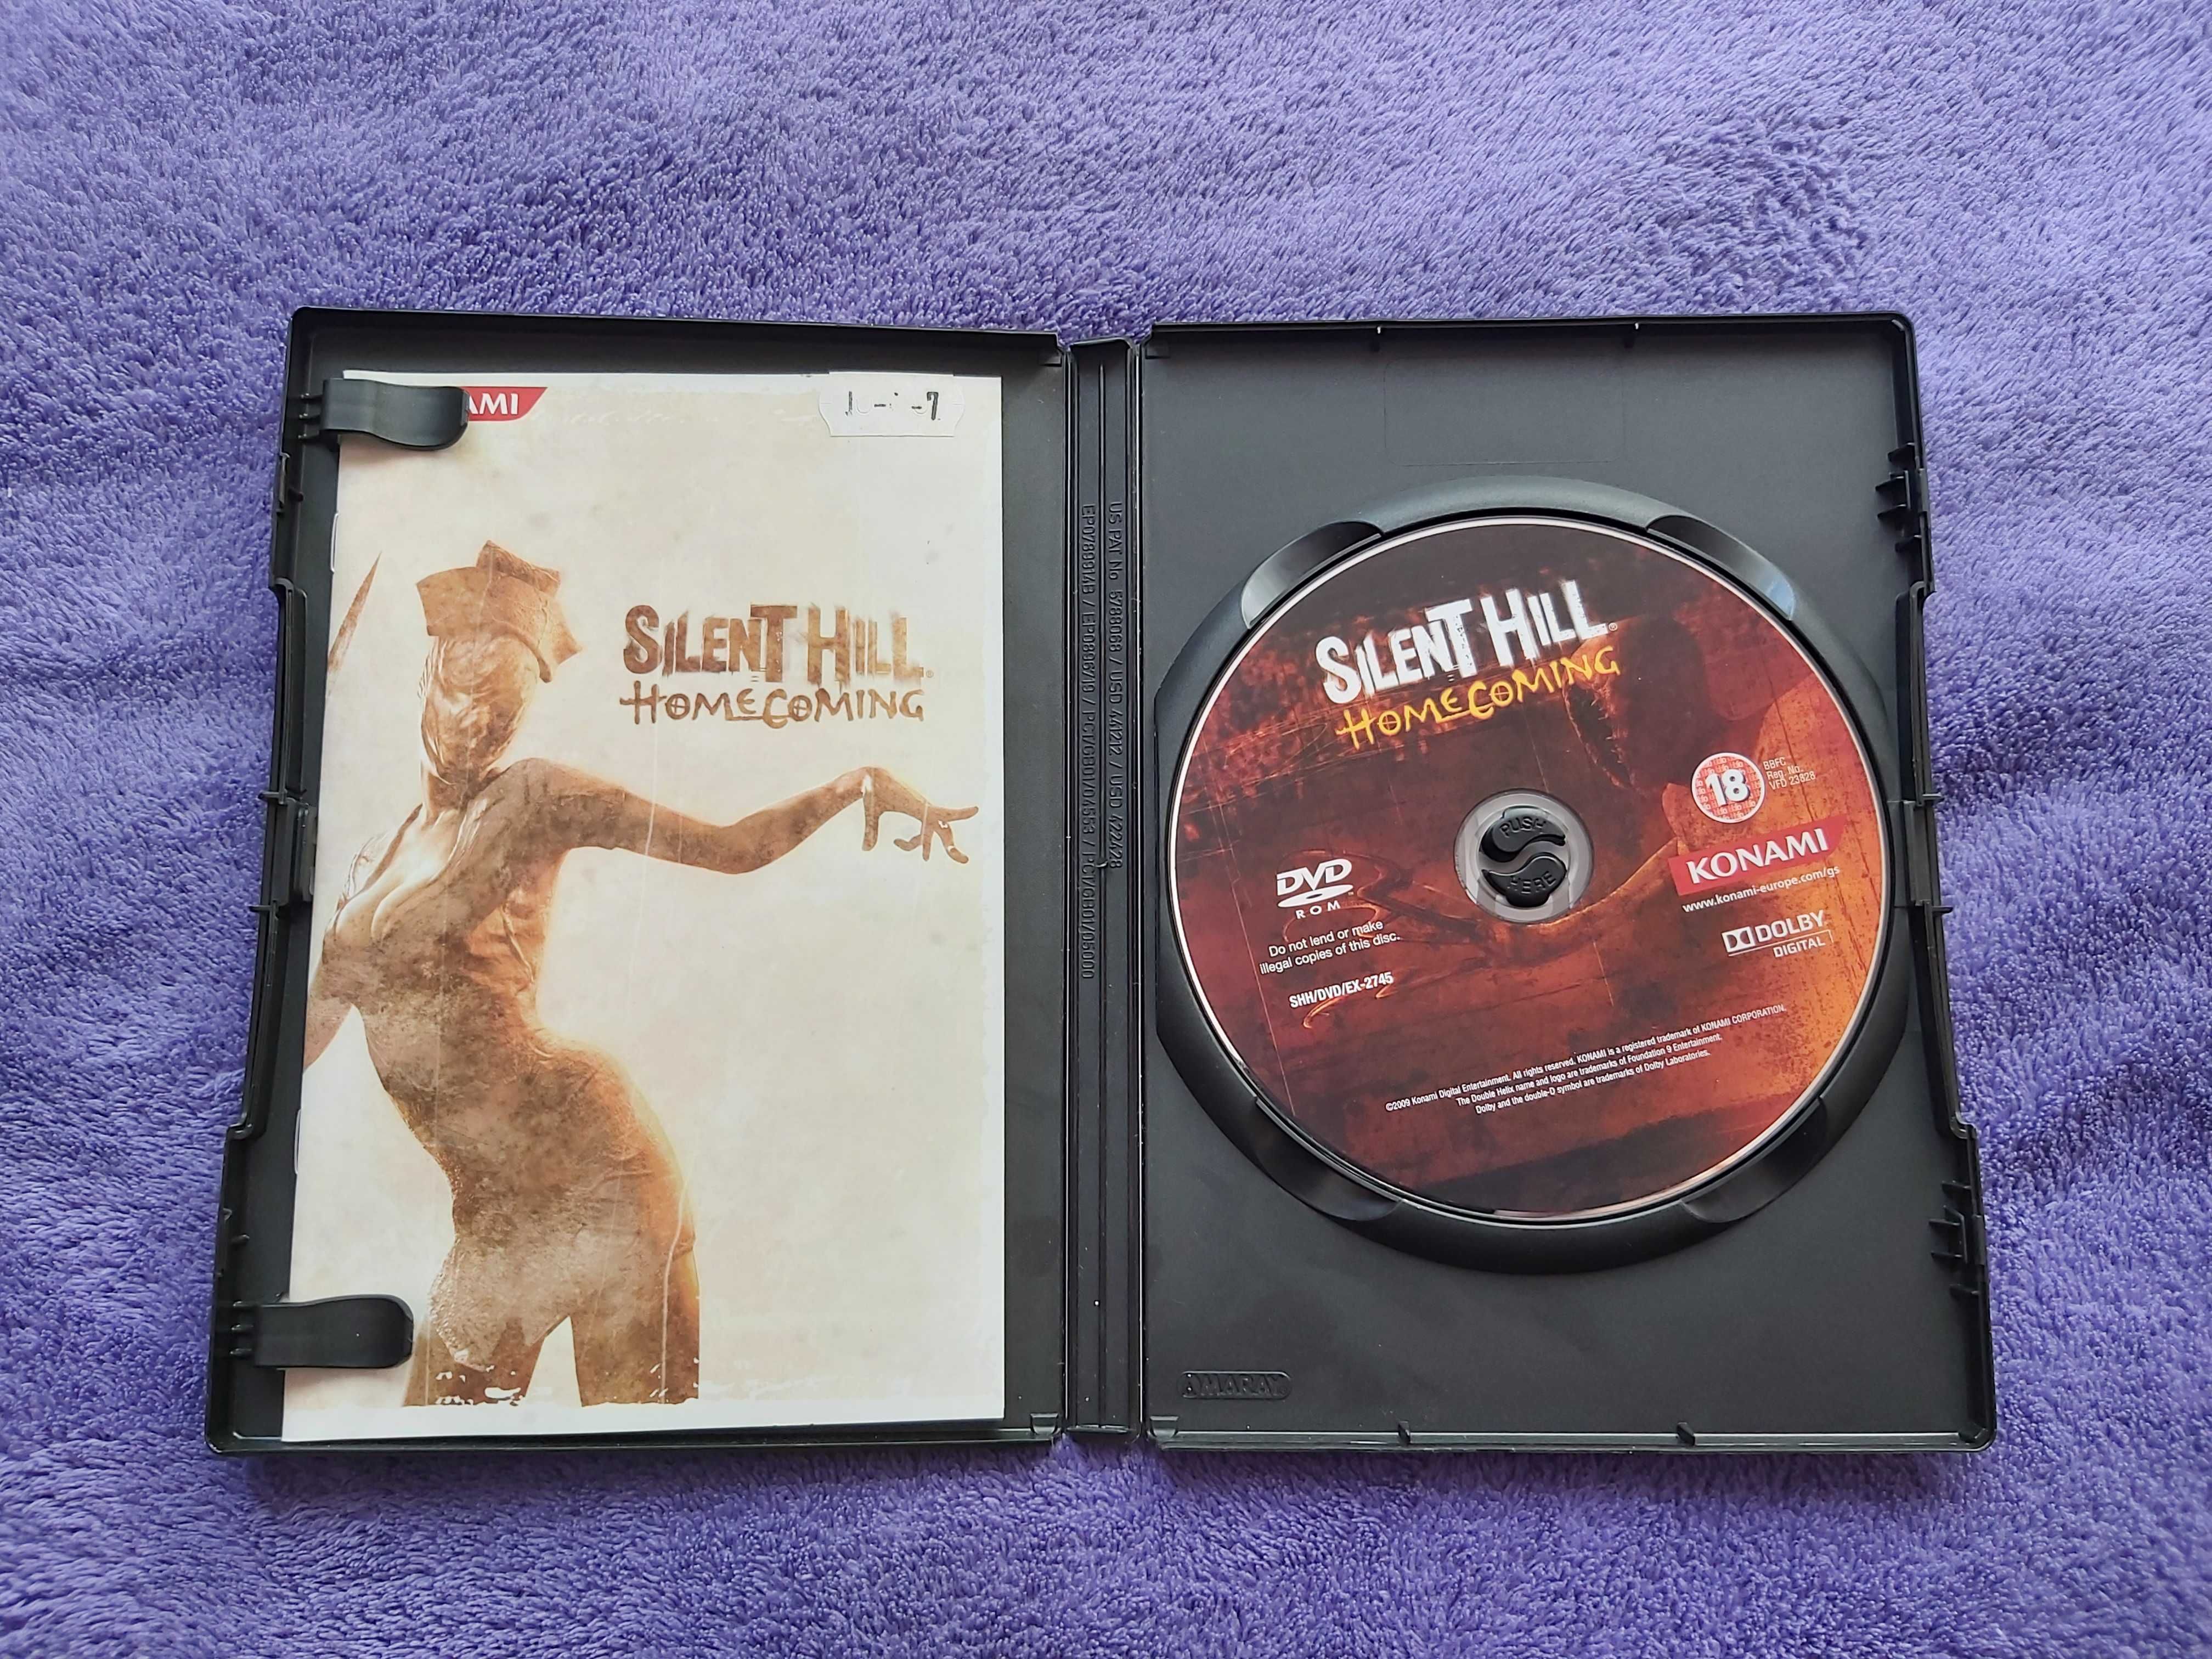 Silent Hill: Homecoming GRA PC BEZ KODU